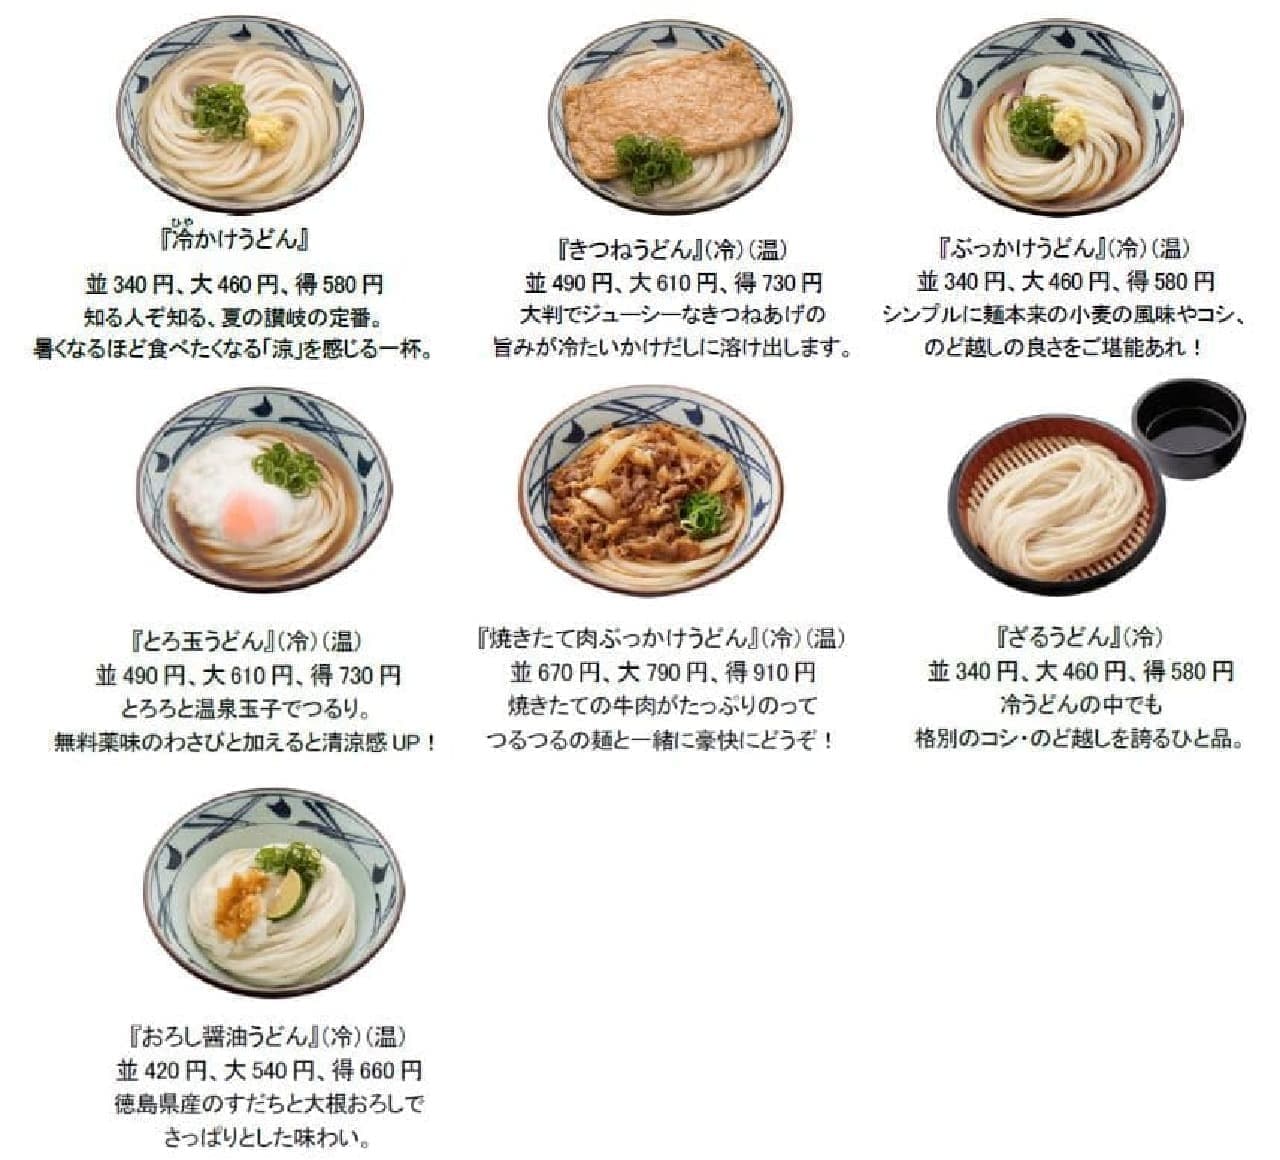 Marugame Seimen's classic cold udon